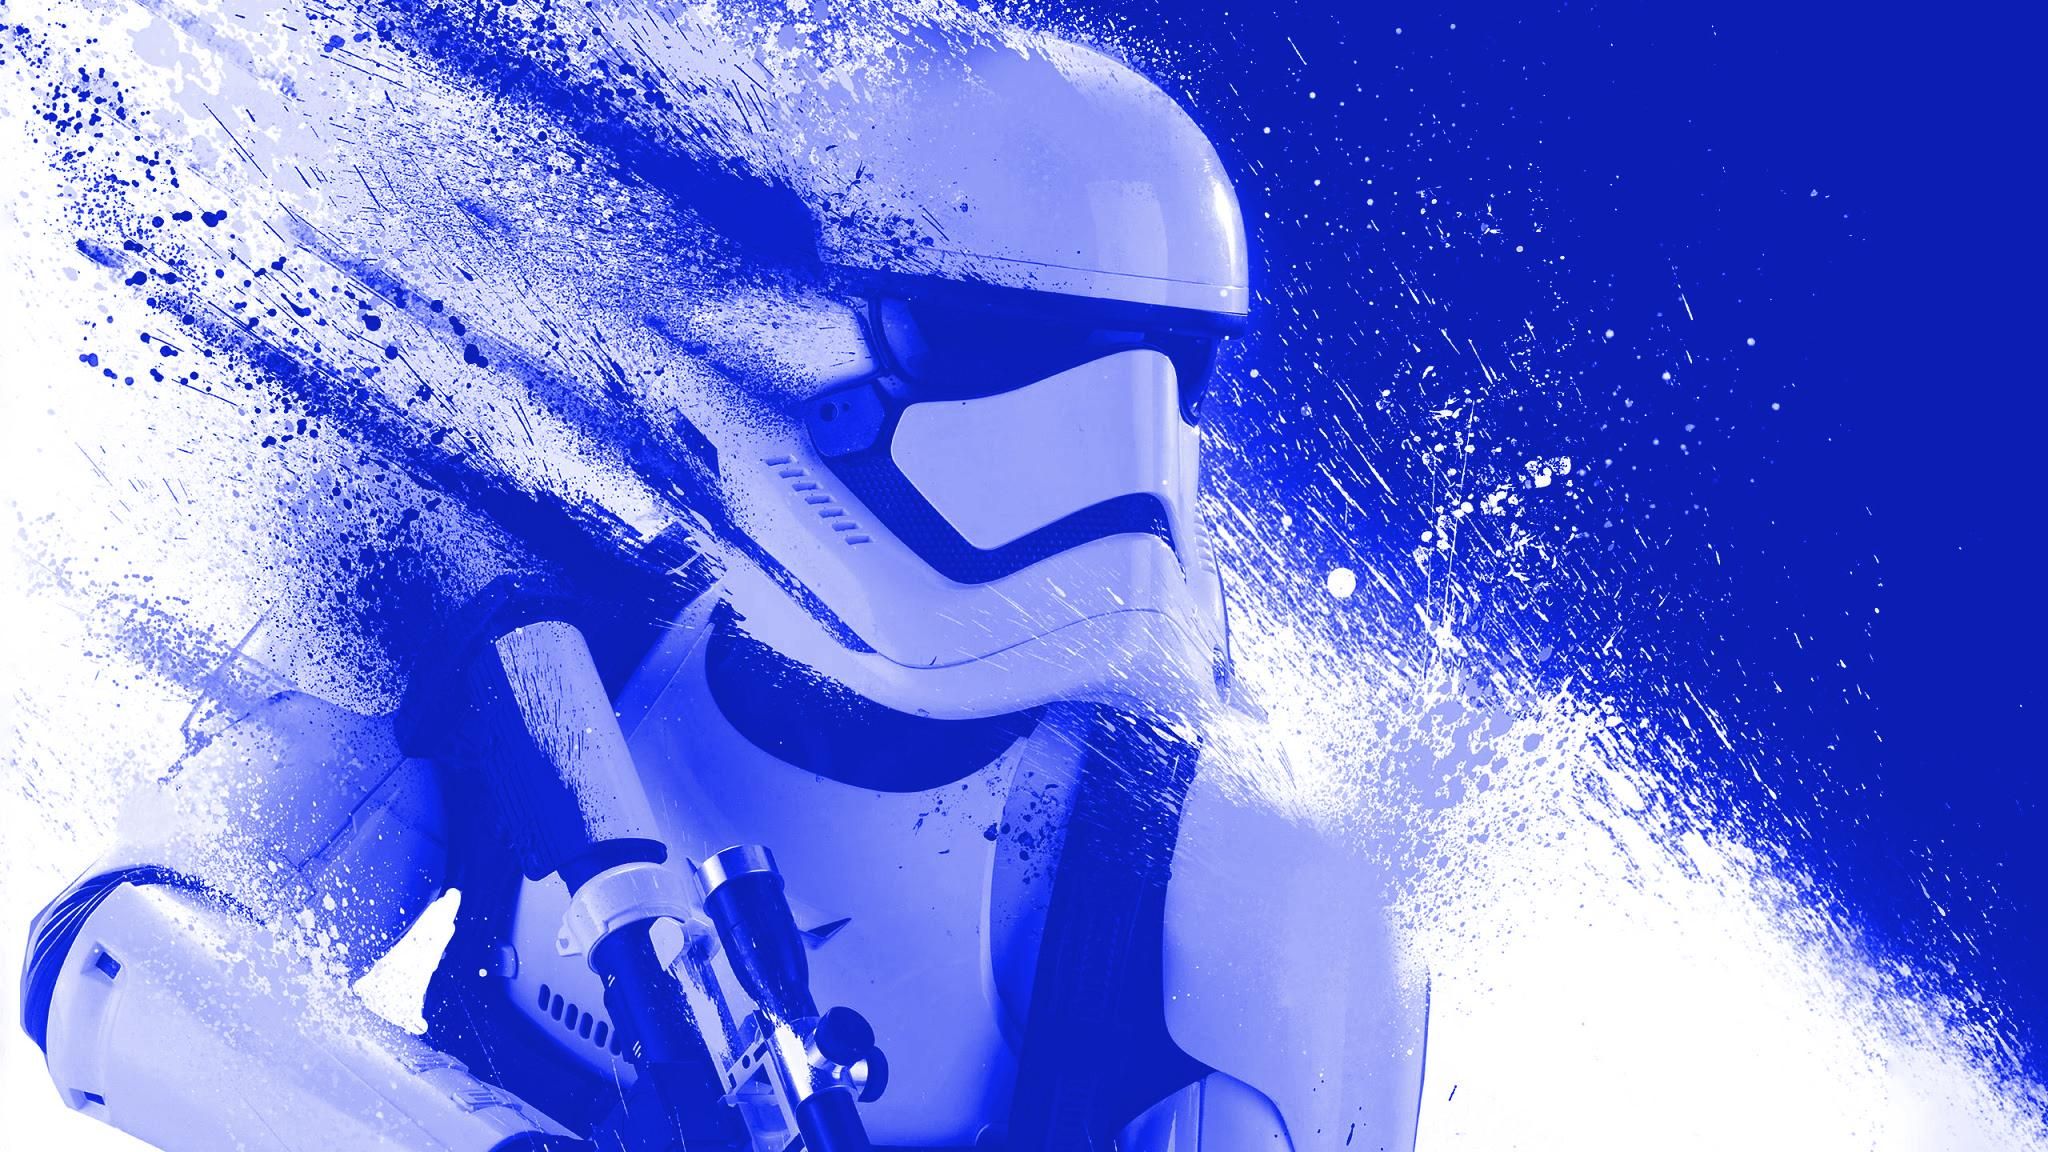 Blue Storm Trooper. Storm trooper, Trooper, Blue